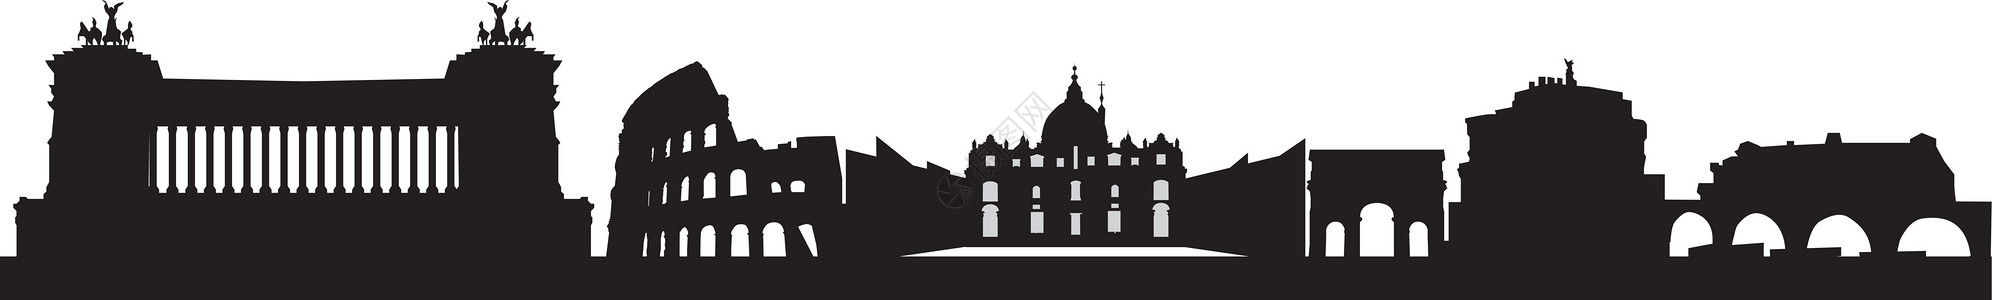 以 rome 天线为单位论坛爬坡旗帜建筑学教廷城市大教堂景观教会黑色图片